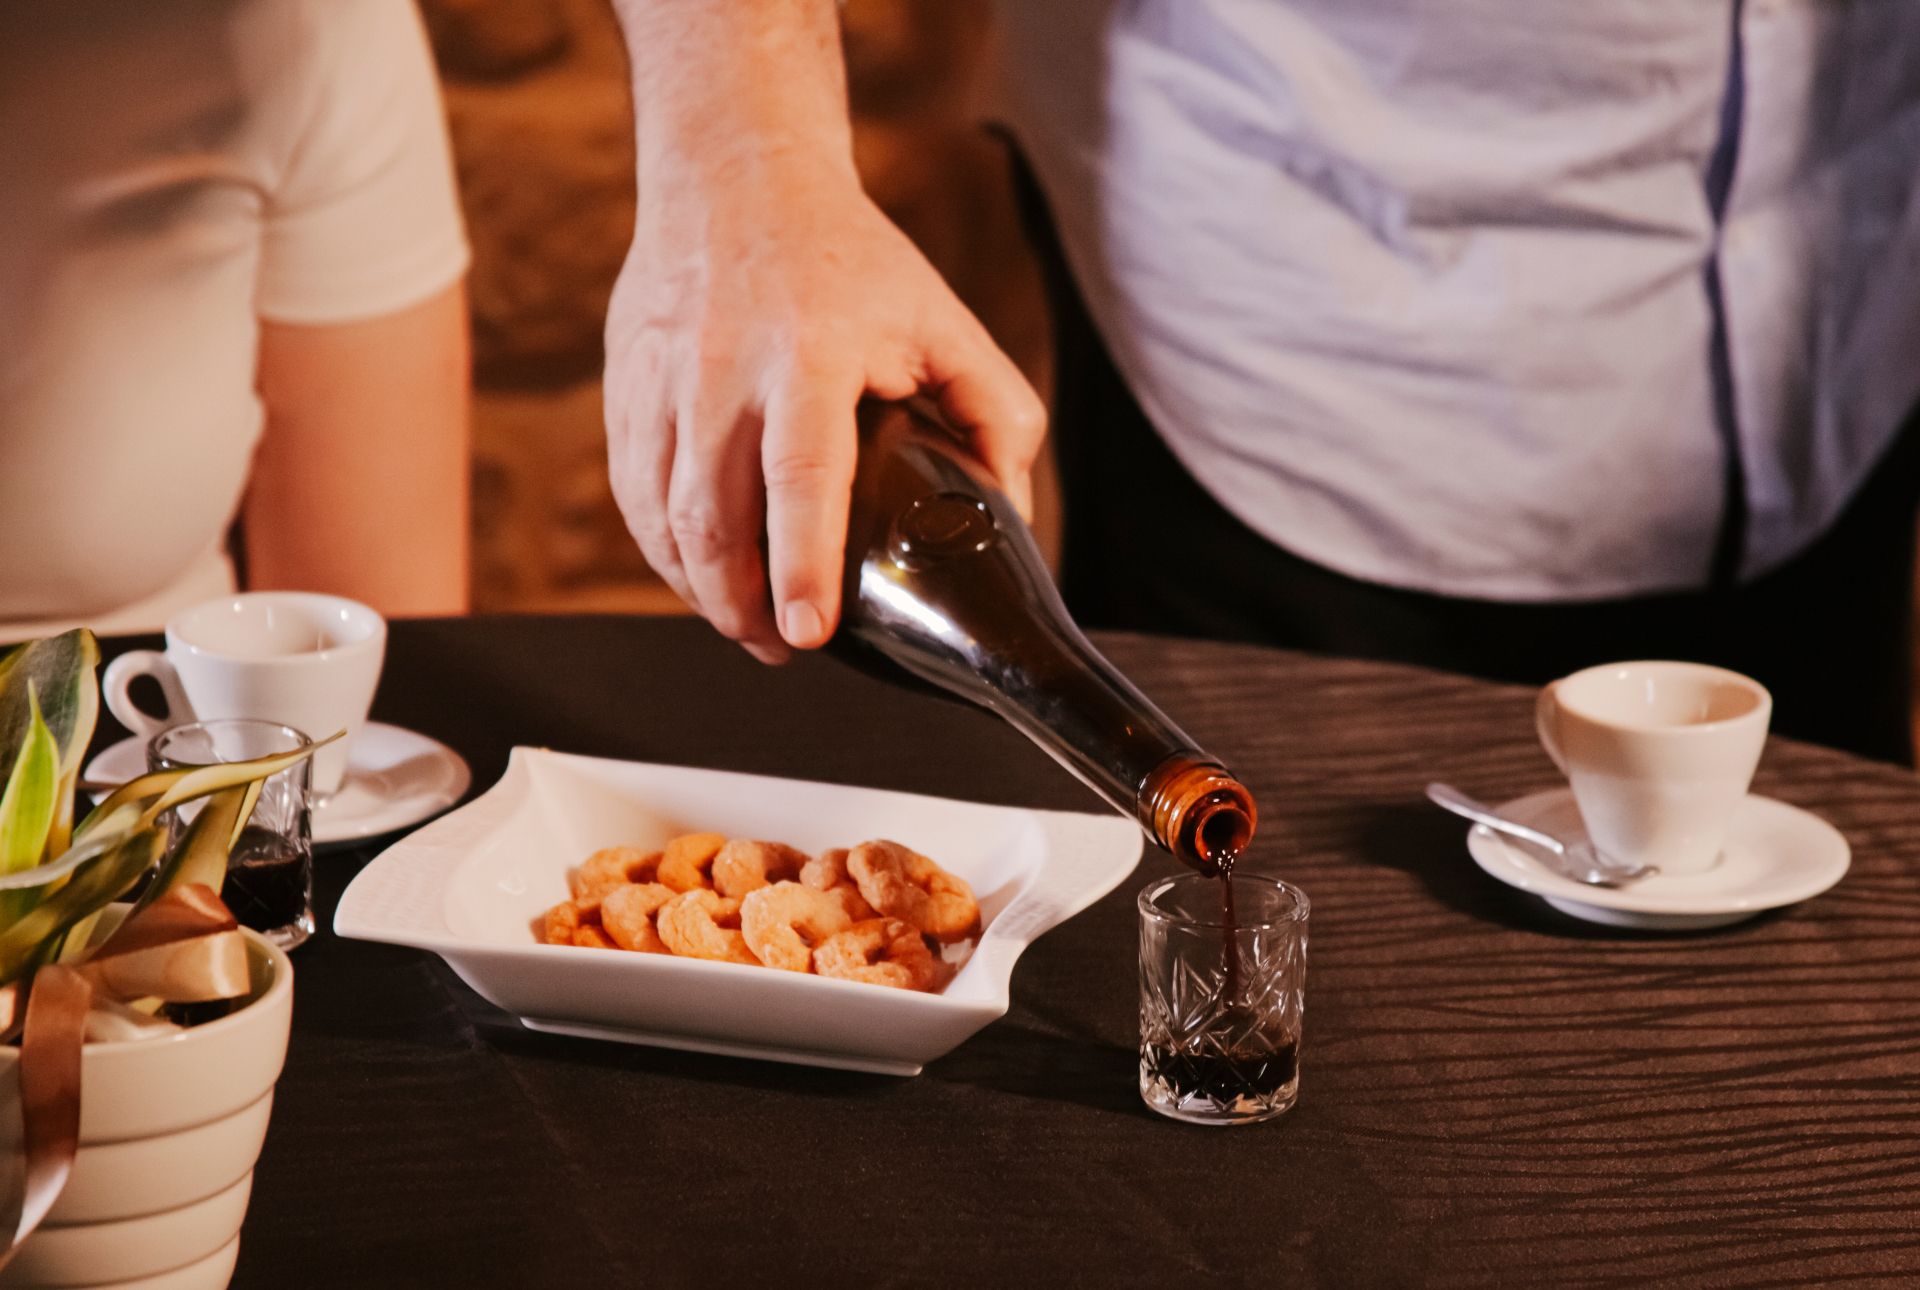 cameriere mentre serve il Vin Cotto ad una coppia dopo cena nel ristorante La Tacchinella cucina tipica teramana abruzzese a Canzano